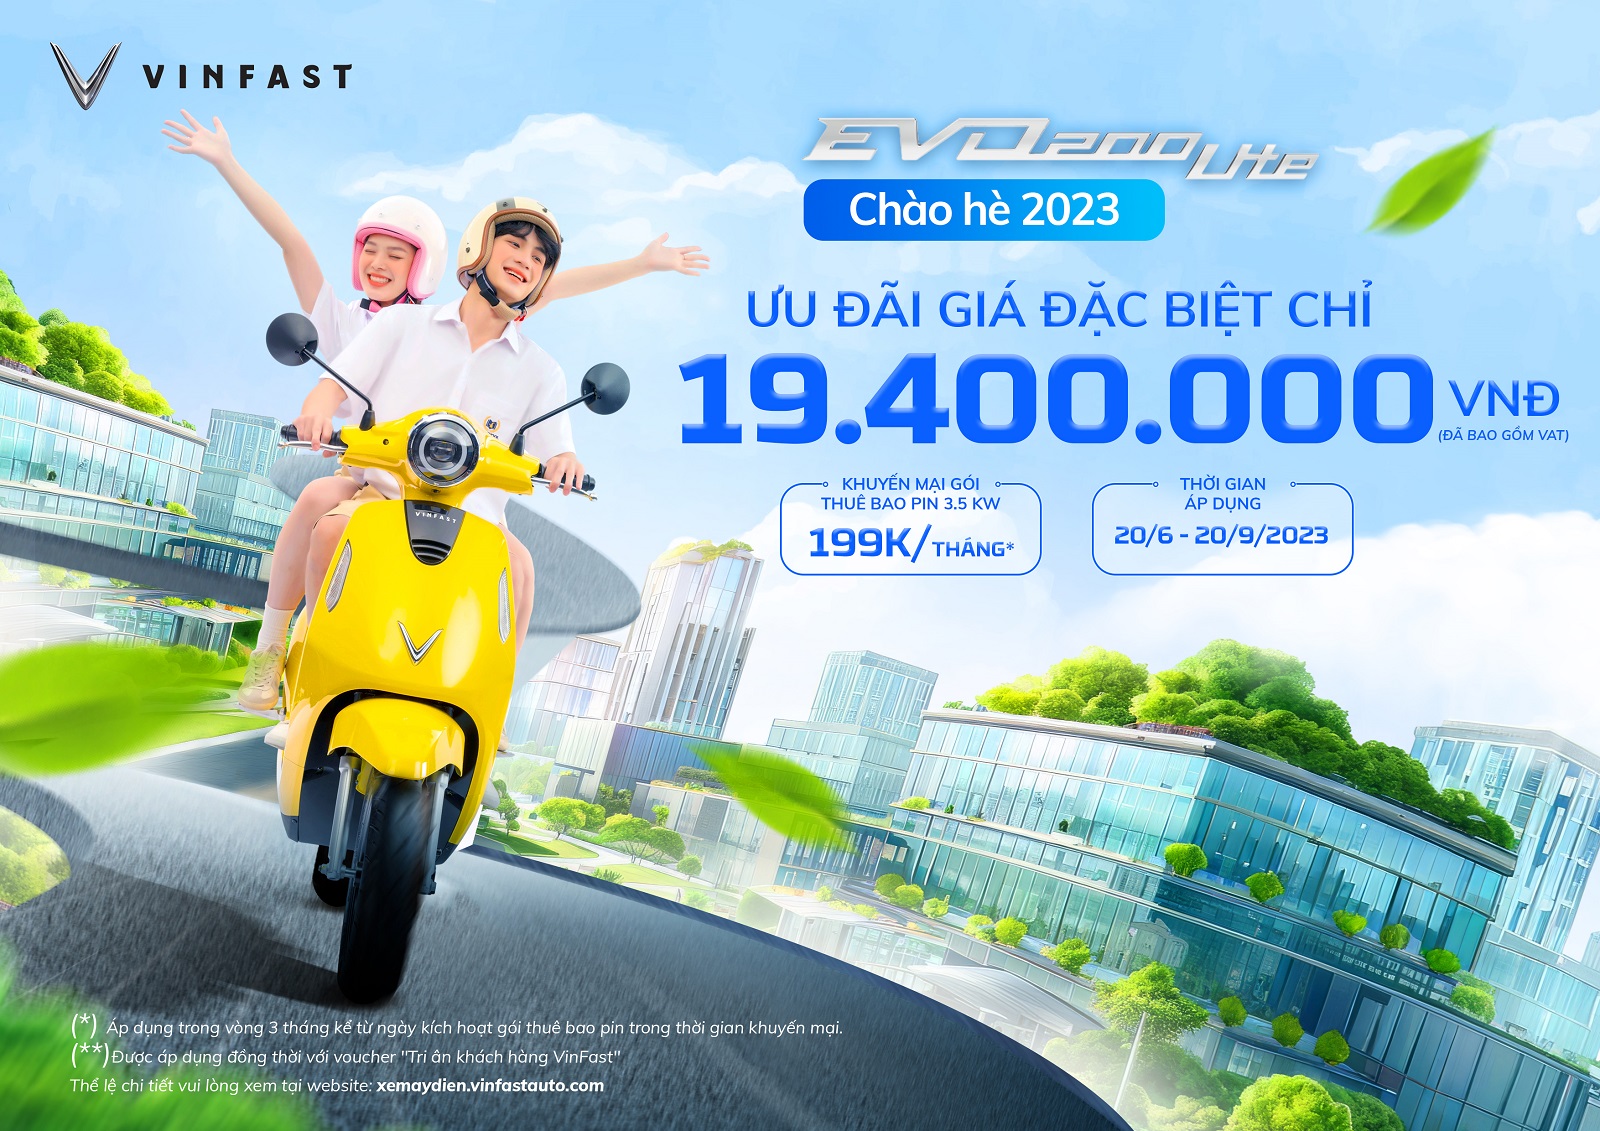 VinFast ưu đãi đặc biệt mùa hè - Evo200 Lite về giá 19,4 triệu đồng - 1